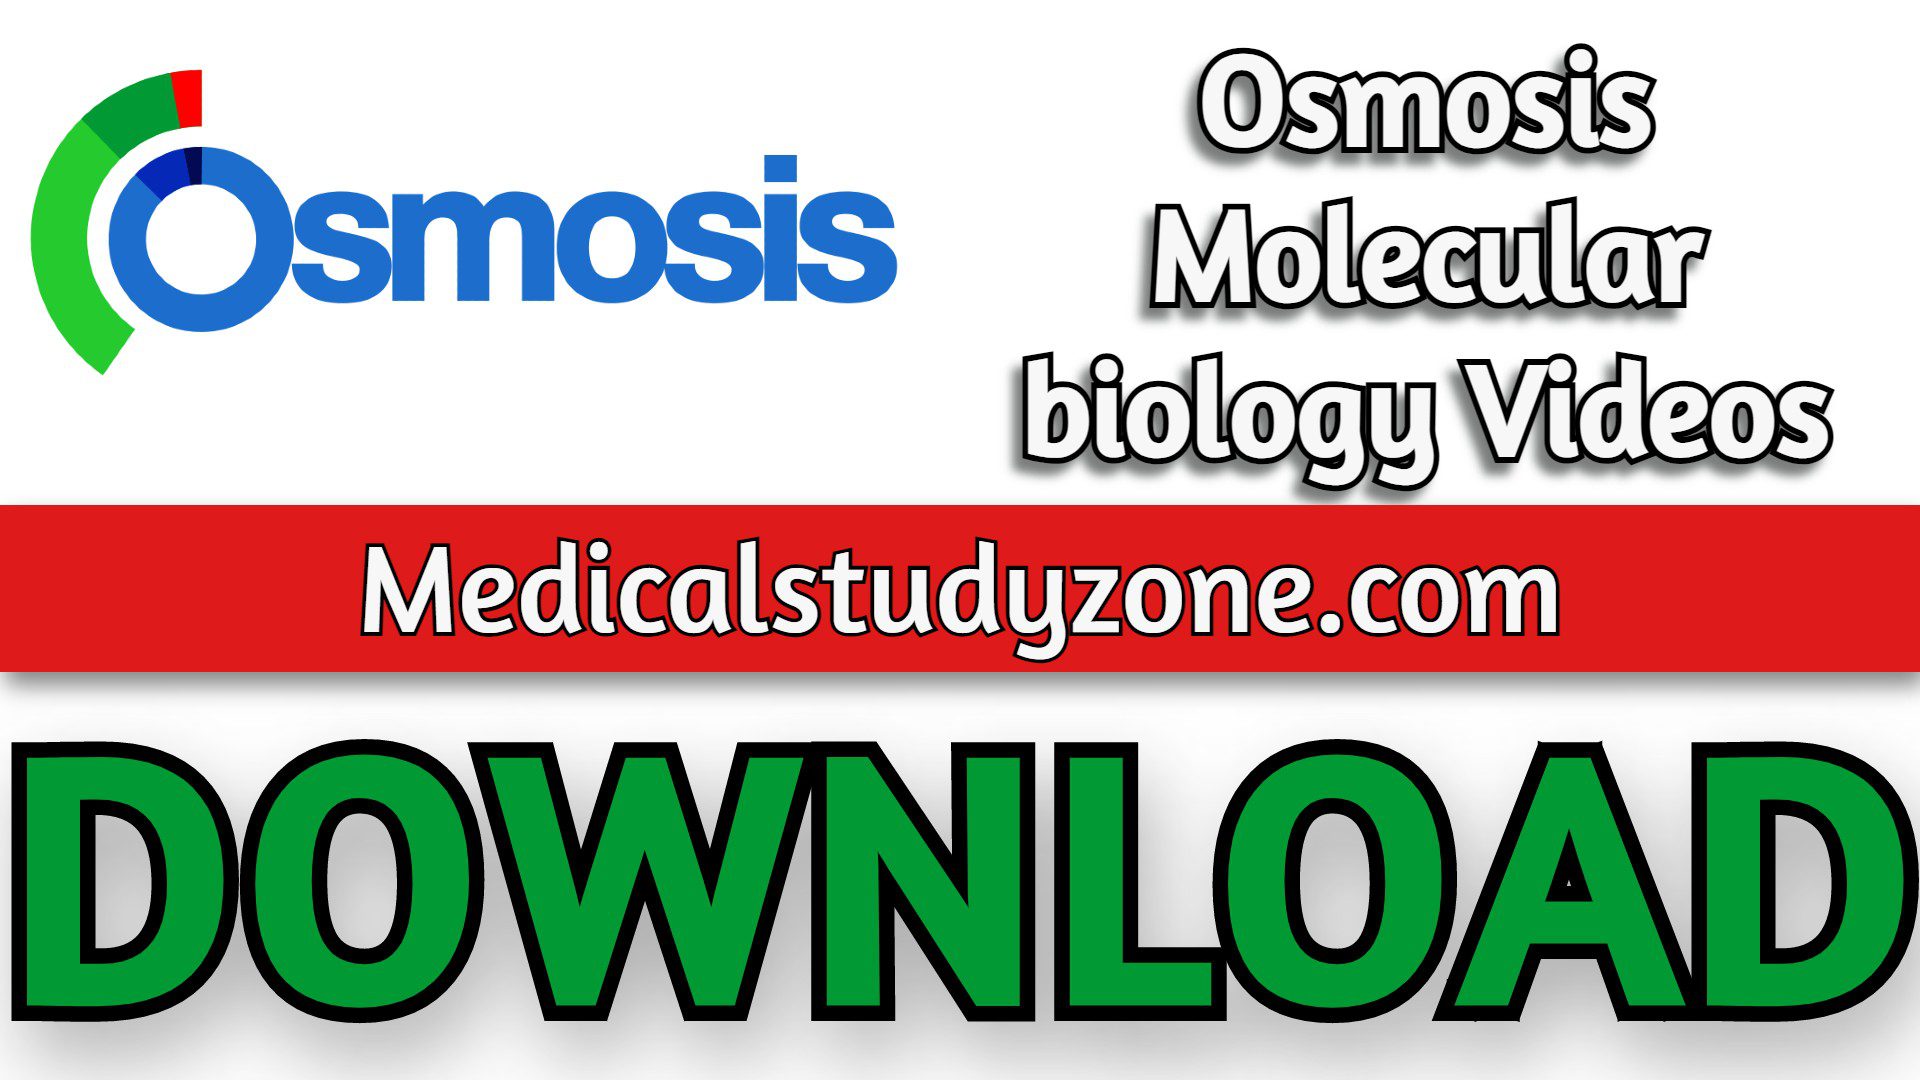 Osmosis Molecular biology Videos 2022 Free Download